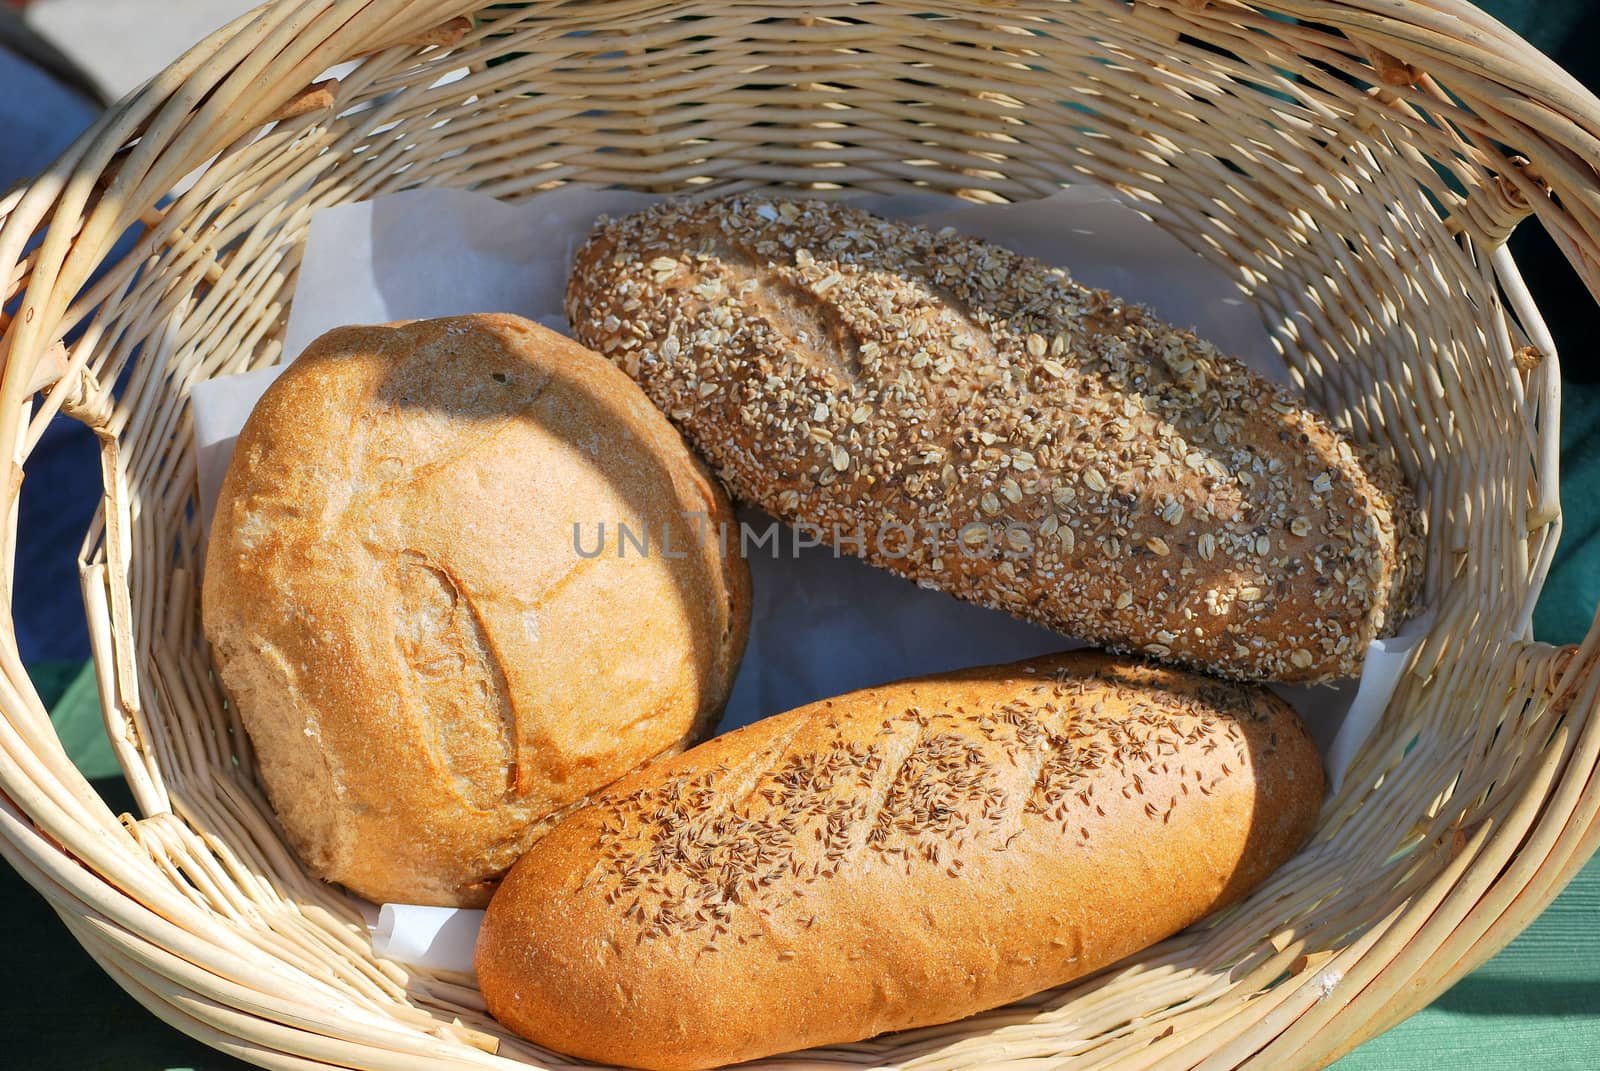 Fresh baked bread. by oscarcwilliams